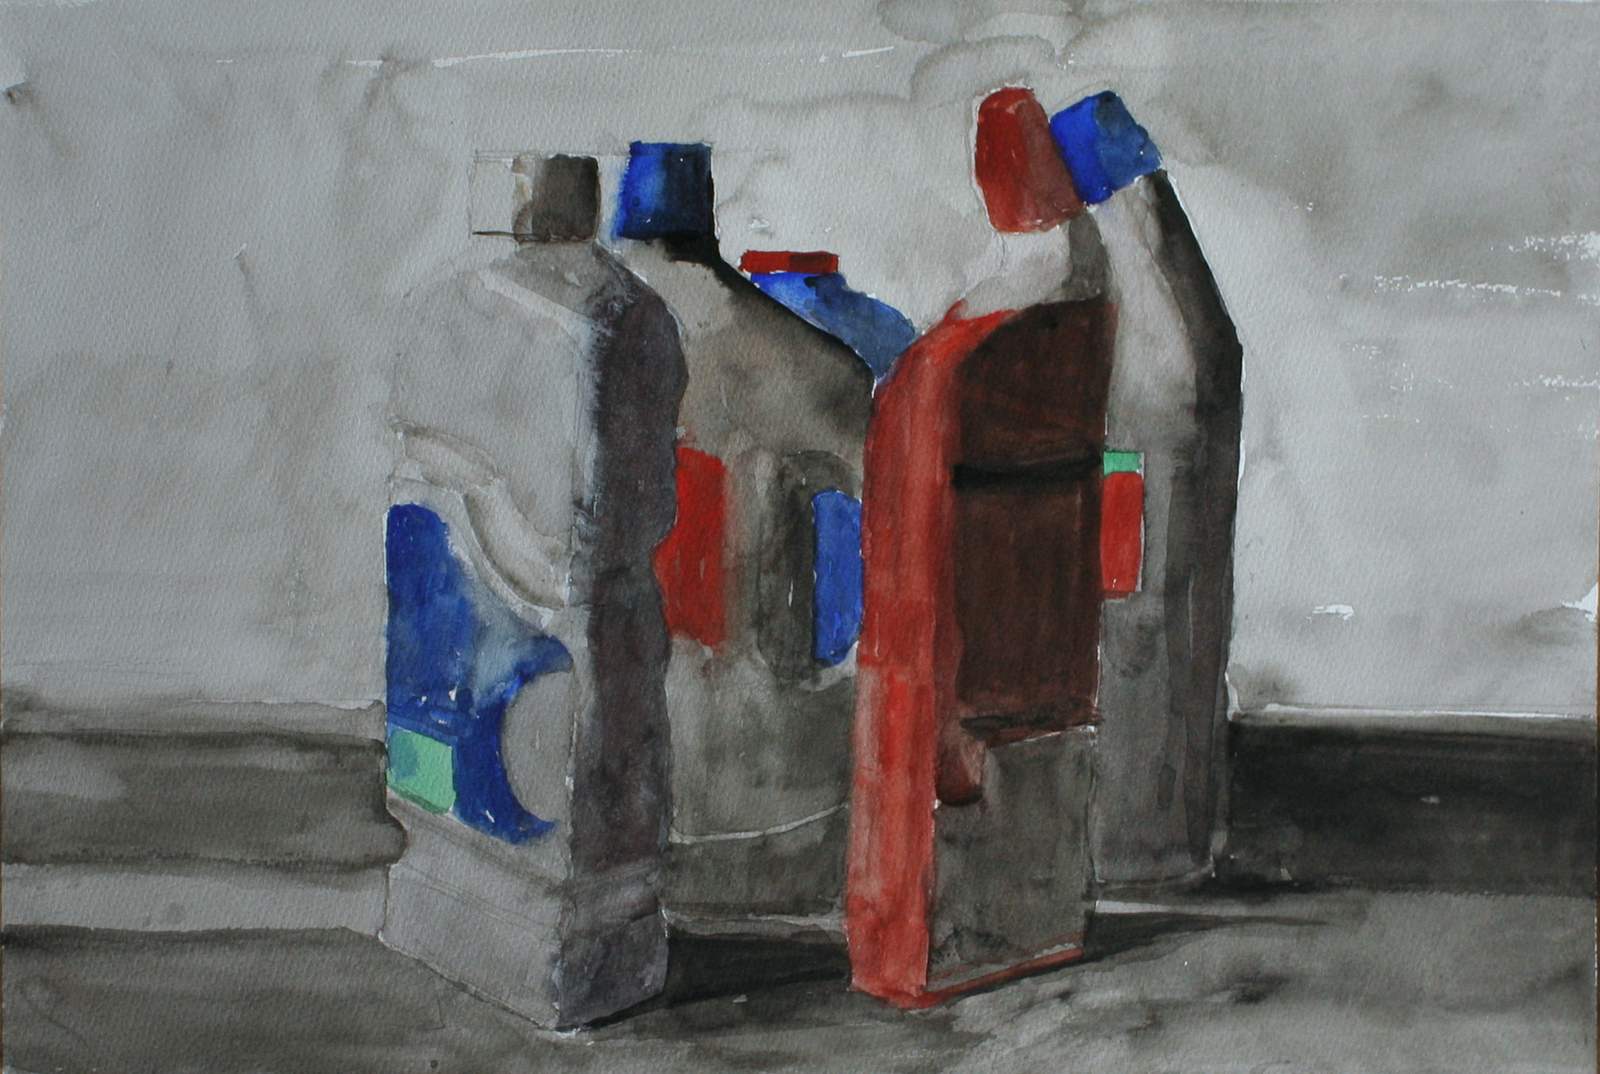 Watercolour five plastic bottles